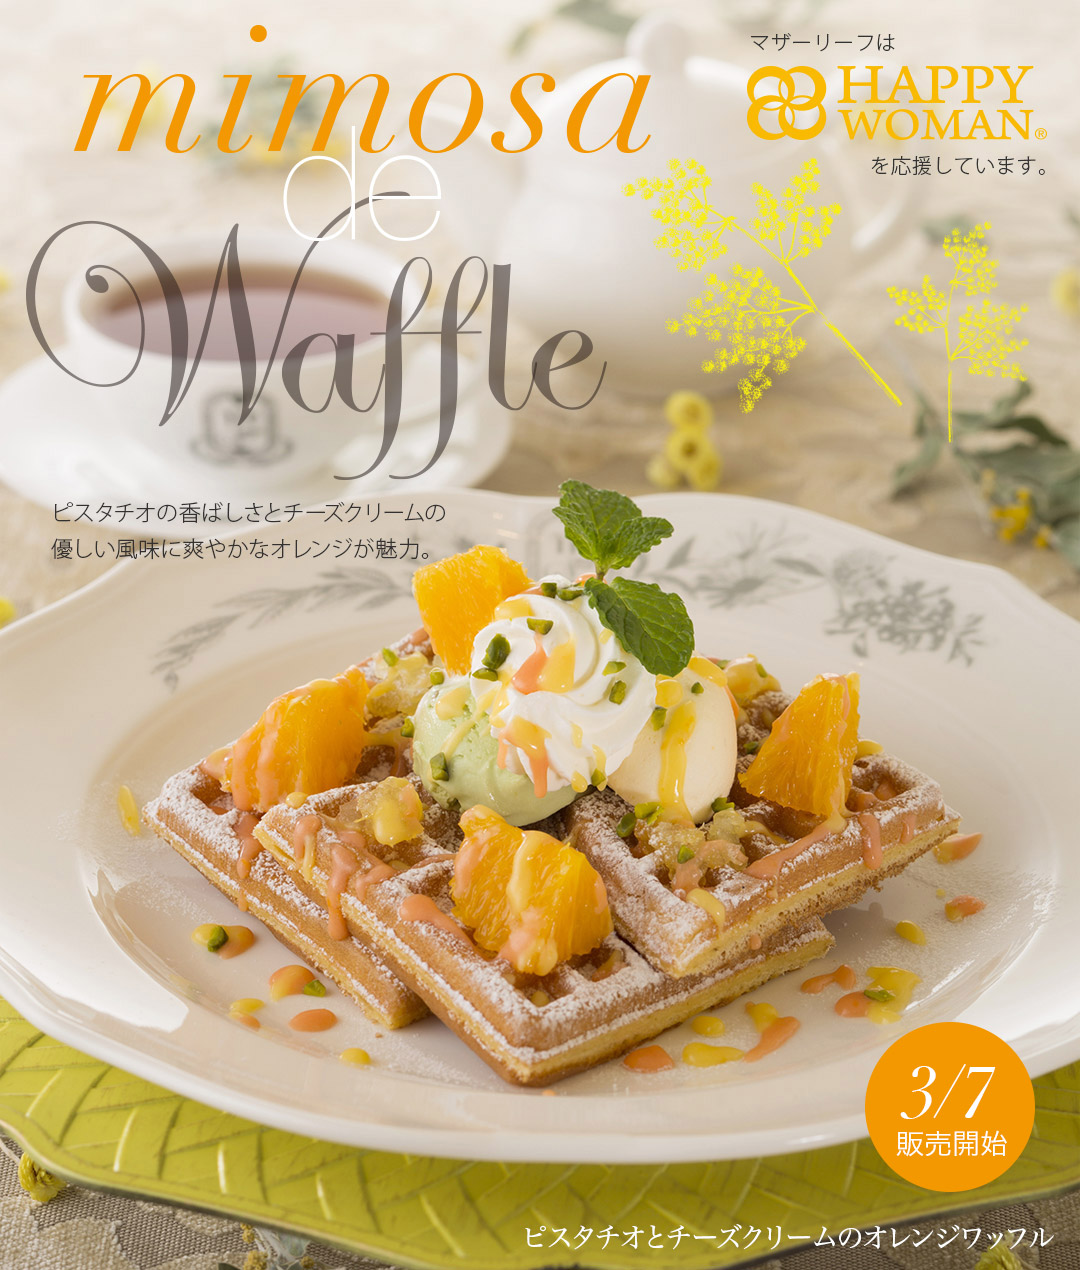 Mimosa de Waffle ピスタチオとチーズクリームのオレンジワッフル